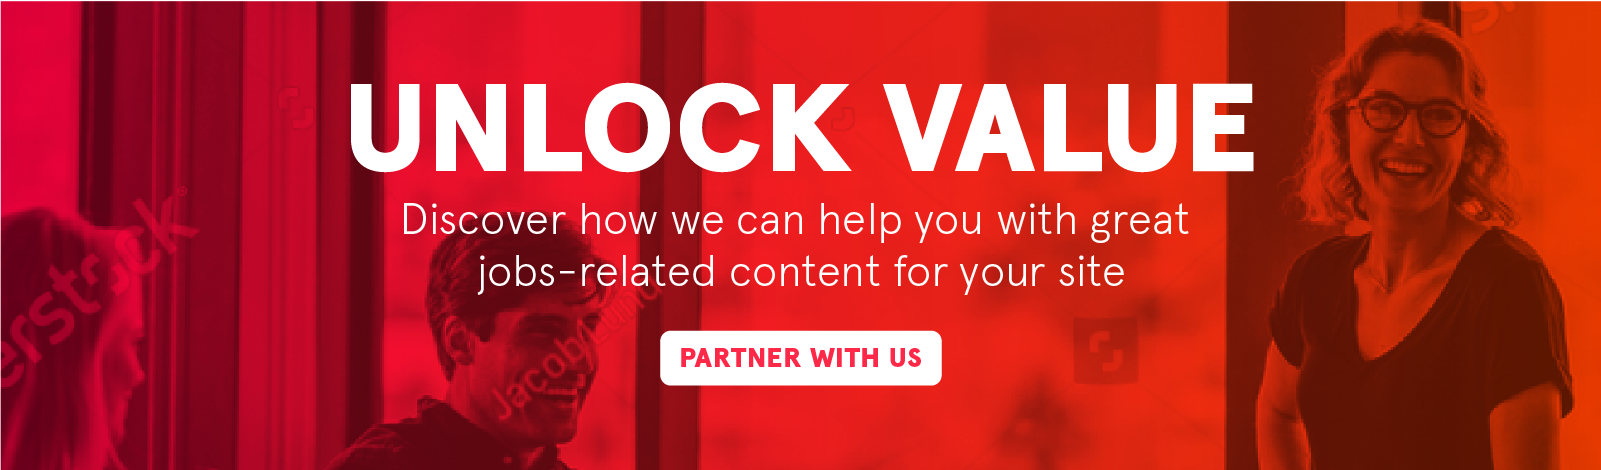 Unlock value, contact us